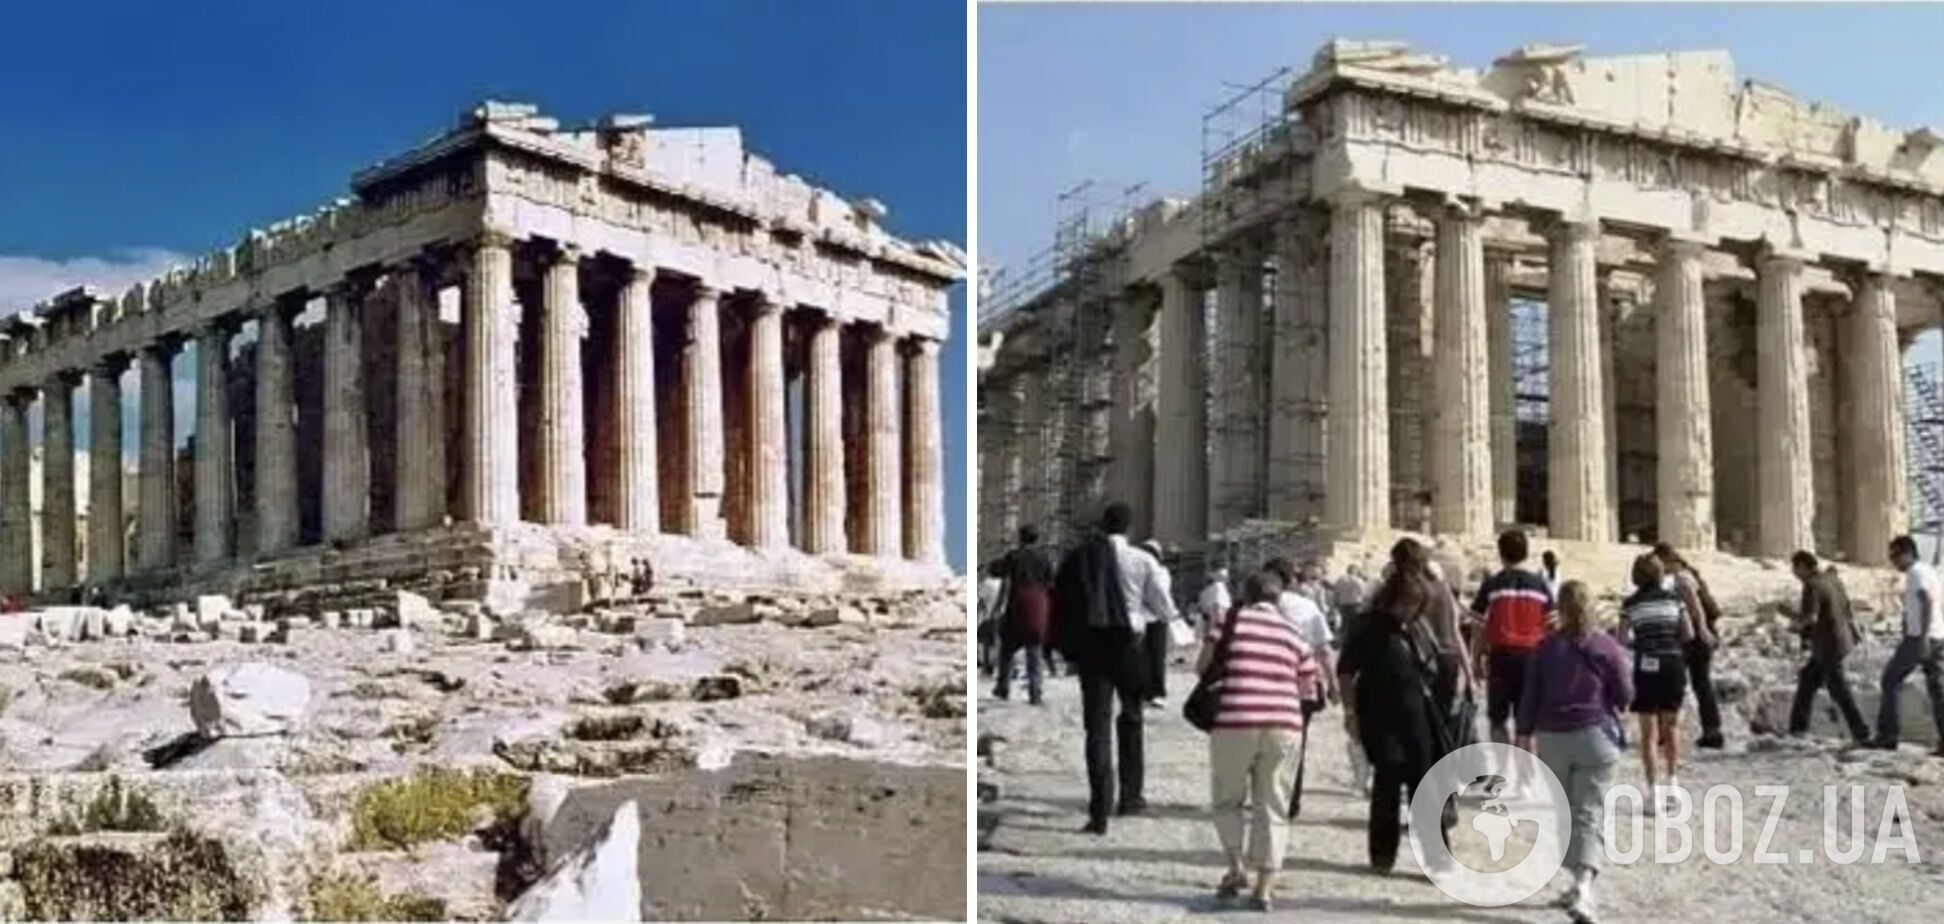 Афинский Акрополь в Греции находится на реставрации